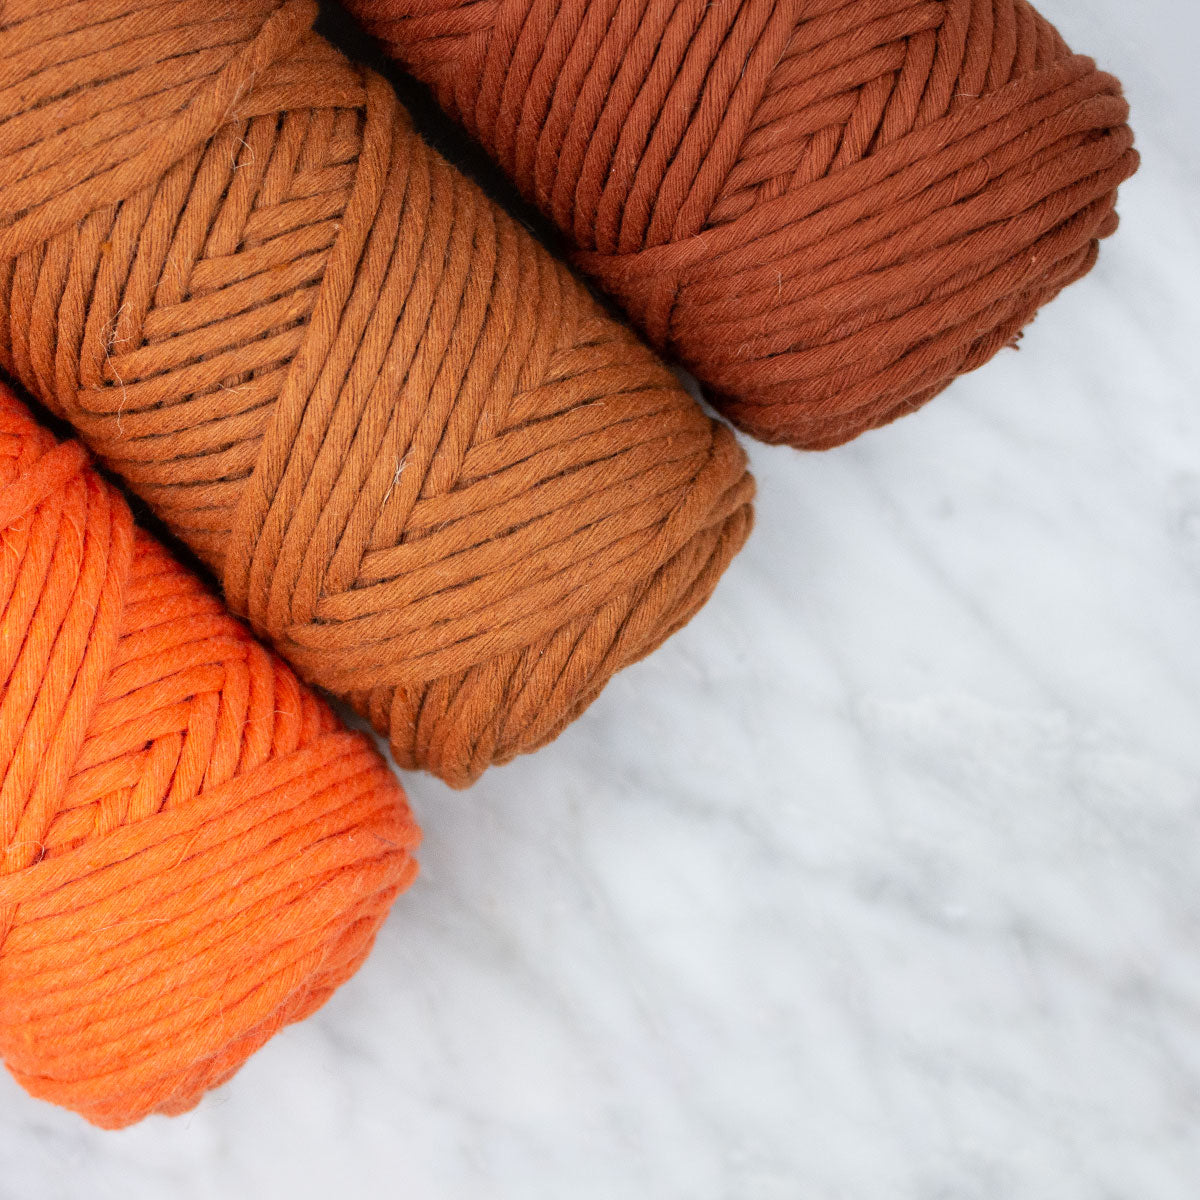 Colored Cotton String 3mm (200gr) - Bundle Copper